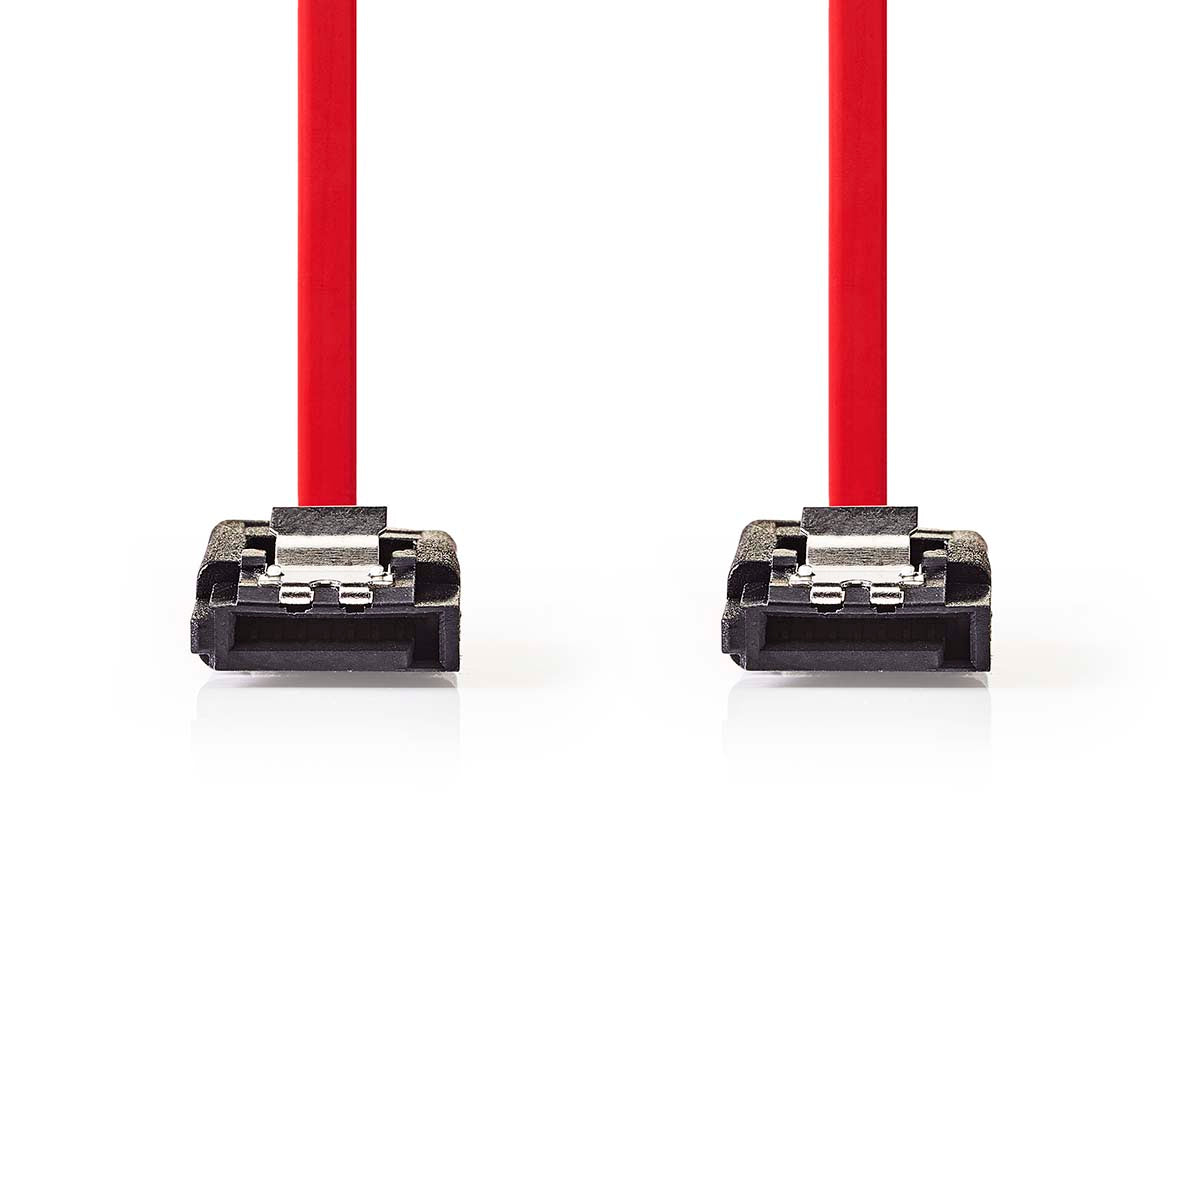 SATA Kabel | 1.5 Gbps | SATA 7-Pin-Buchse | SATA 7-Pin-Buchse | Vernickelt | 0.50 m | Flach | PVC | Red | Box